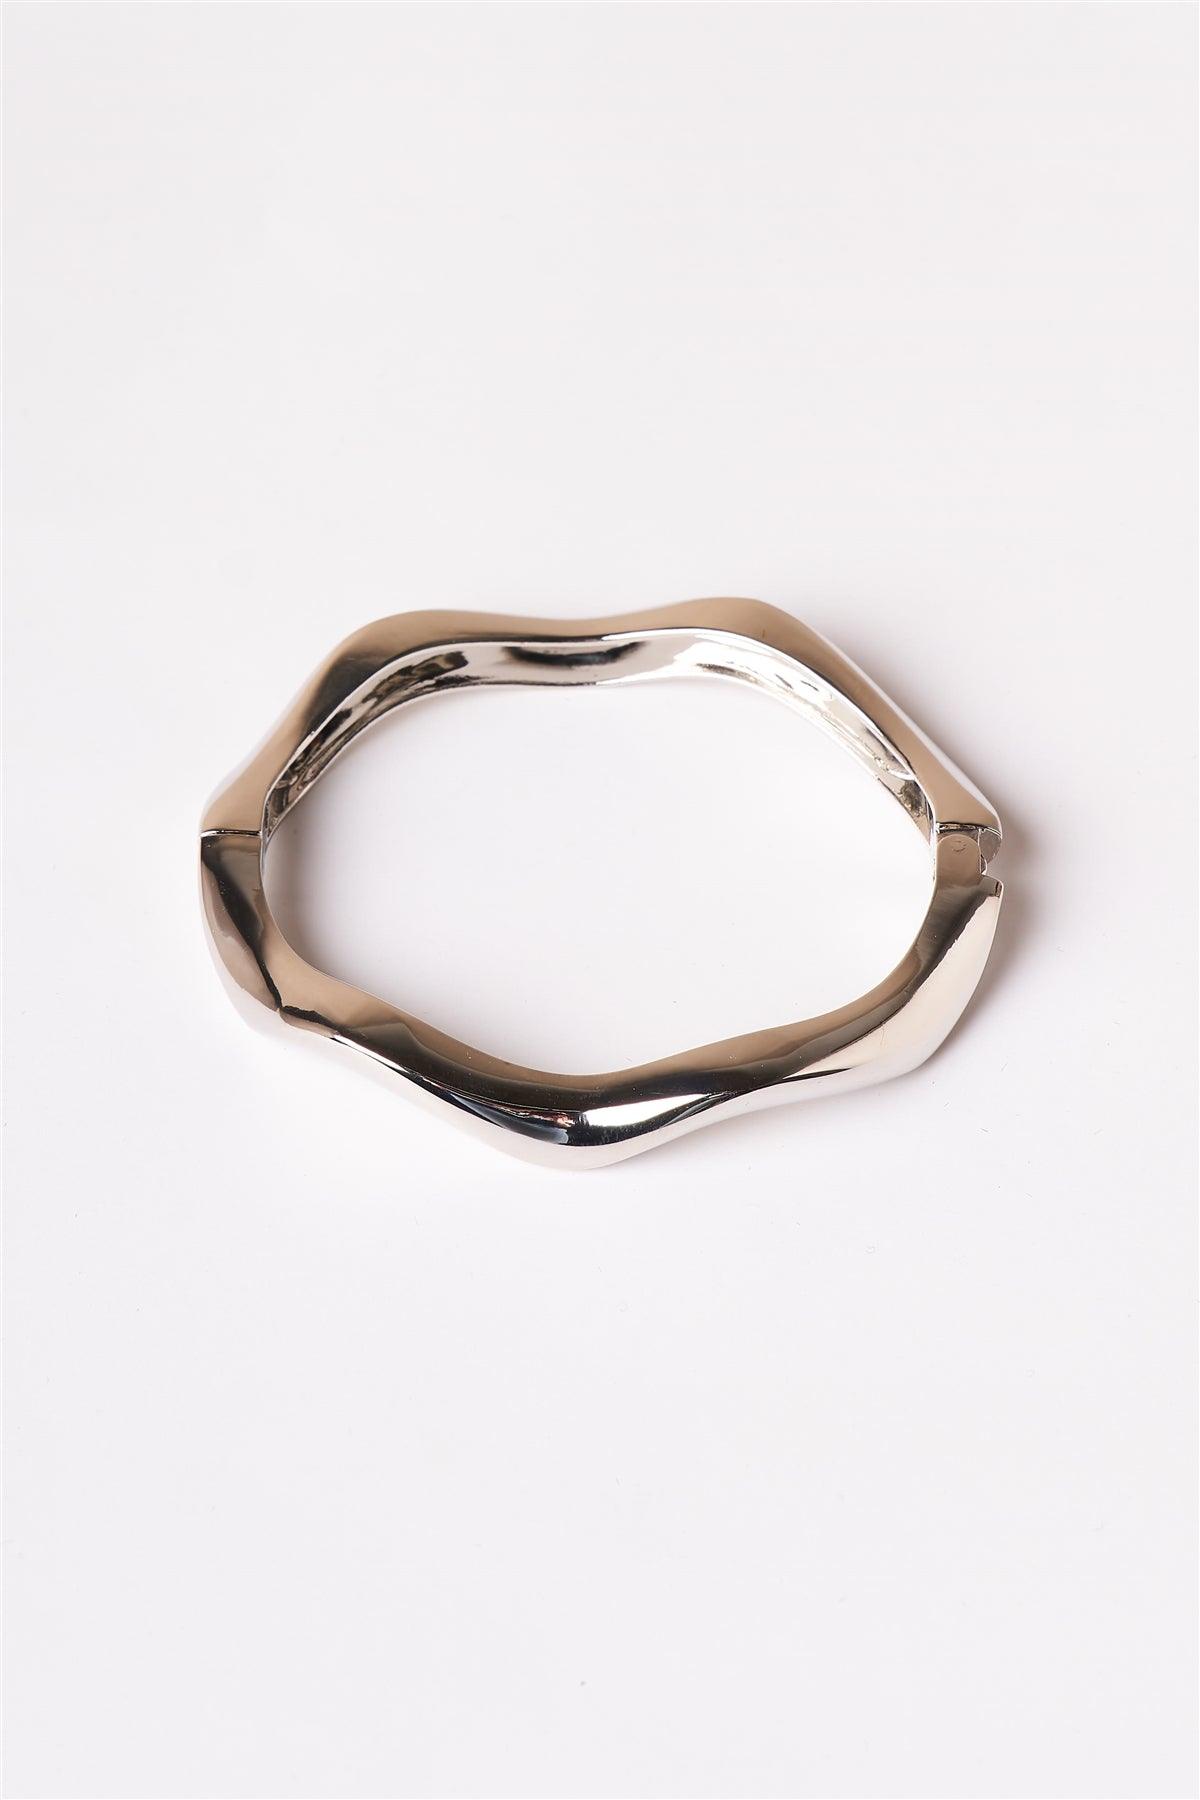 Silver Wavy Bangle Bracelet /1 Piece